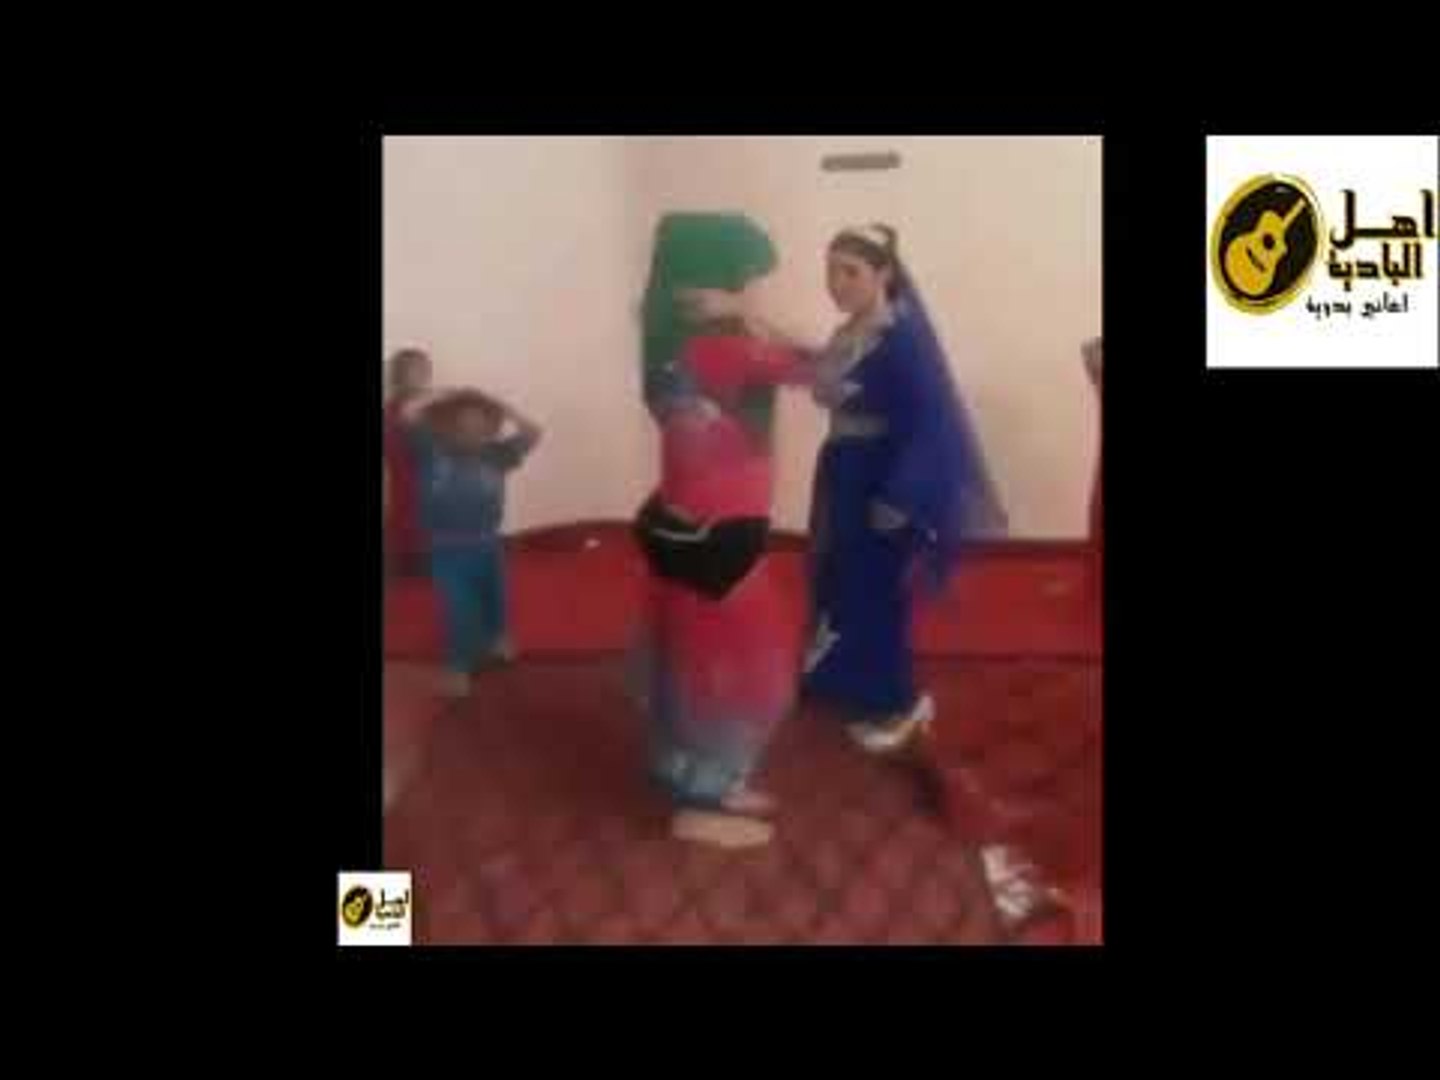 احلي رقص بنت المشرق علي اغنيه شرقوي - video Dailymotion